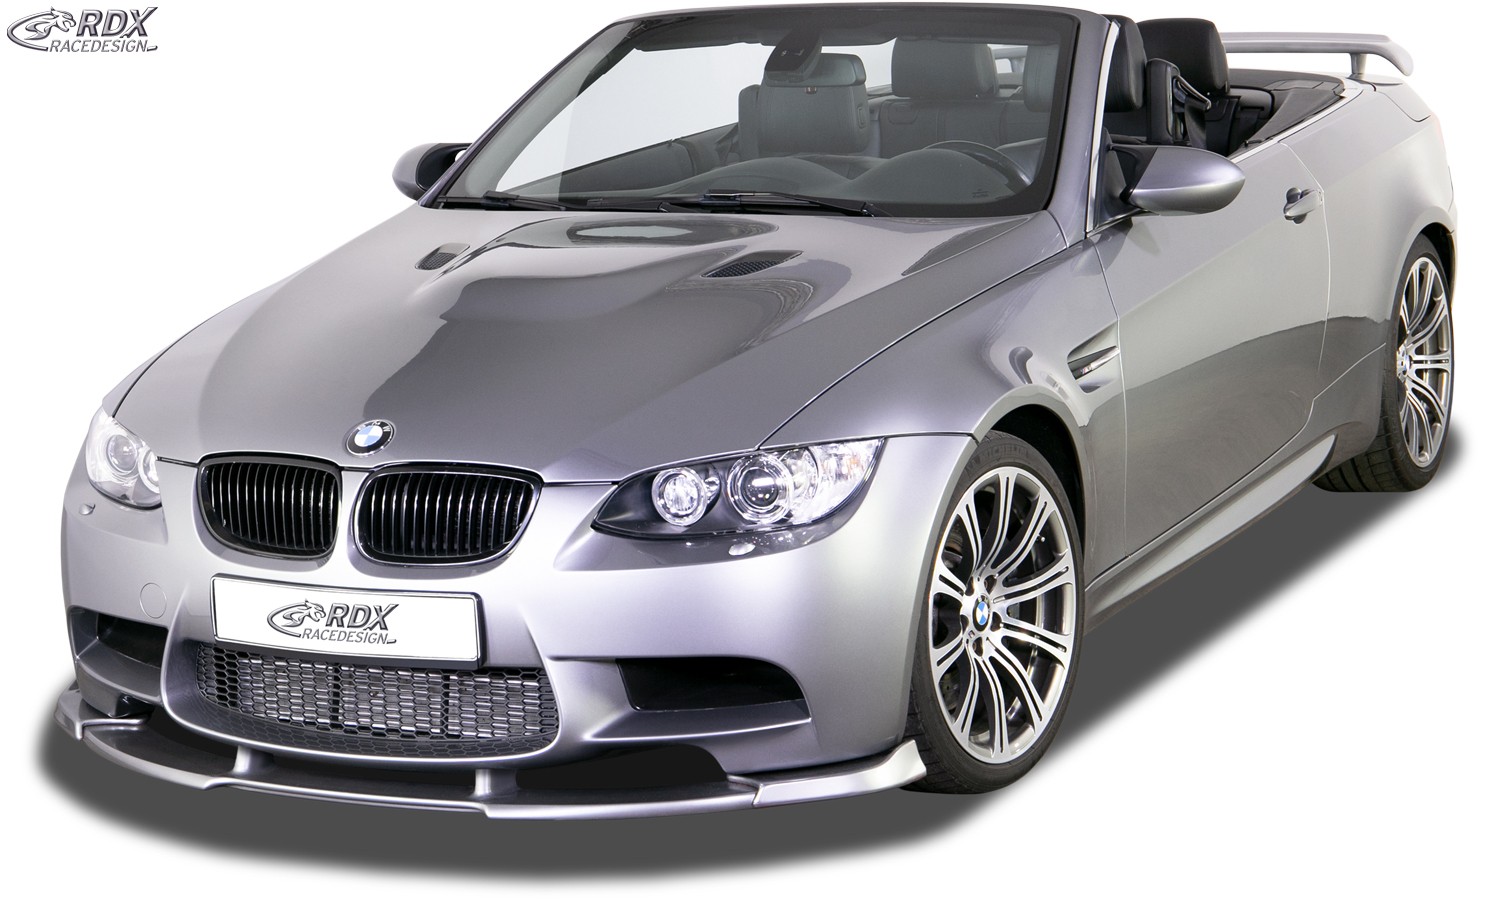 RDX Trunk spoiler Lip pour BMW Série 3 E93 Cabrio / Convertible –  VikingAuto : Tout l'équipement pour votre auto